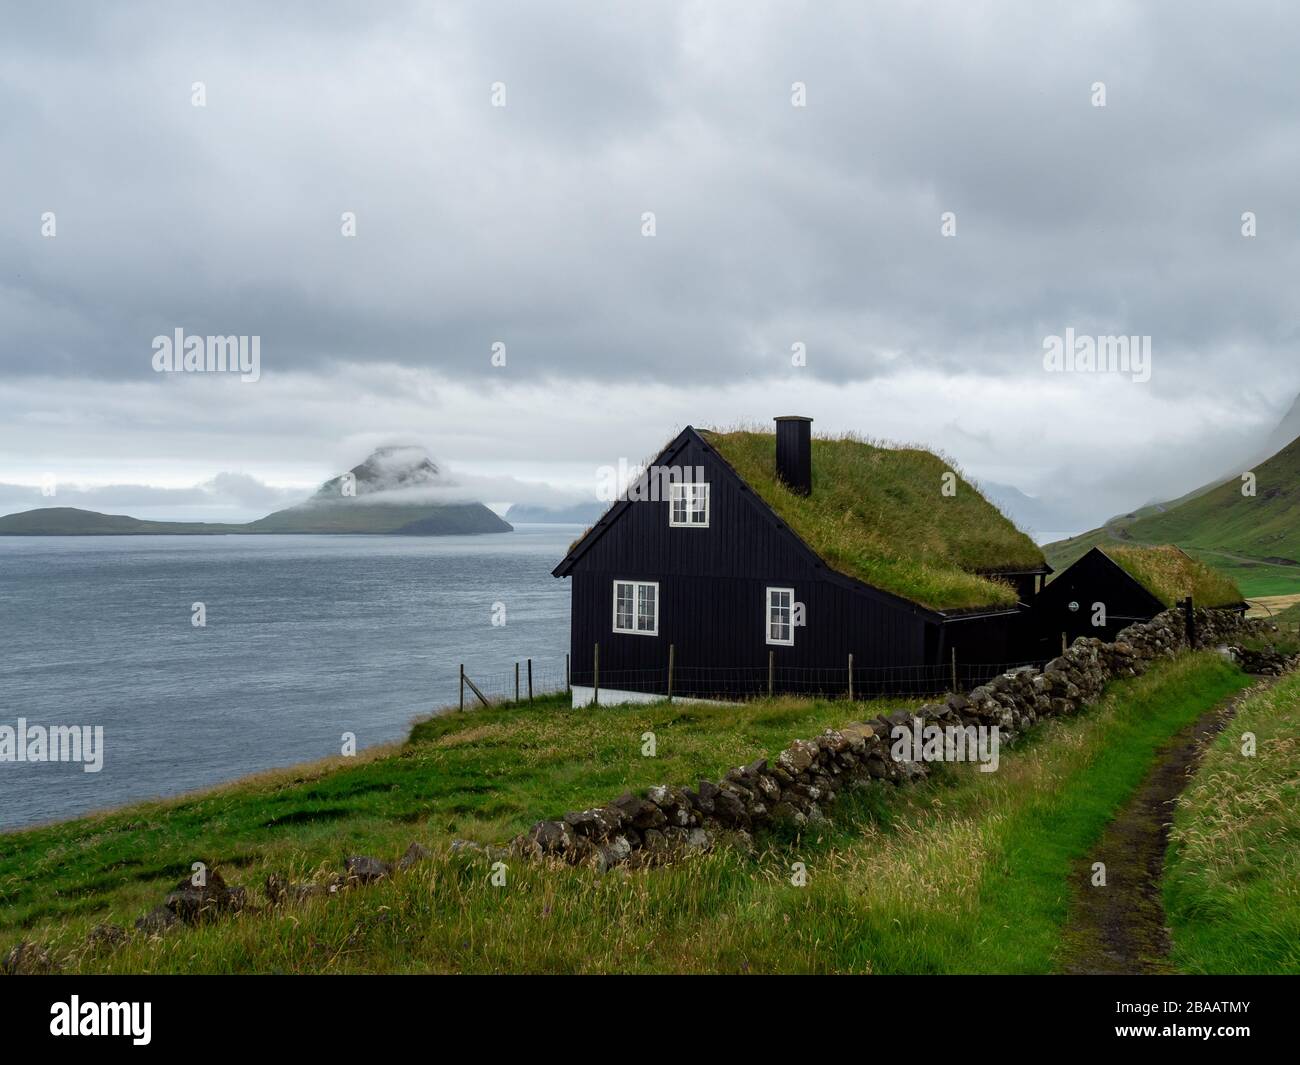 Islas Feroe. Casa con techo de hierba en la ladera de la colina. Paisaje avelloso. Clima nublado. Foto de stock